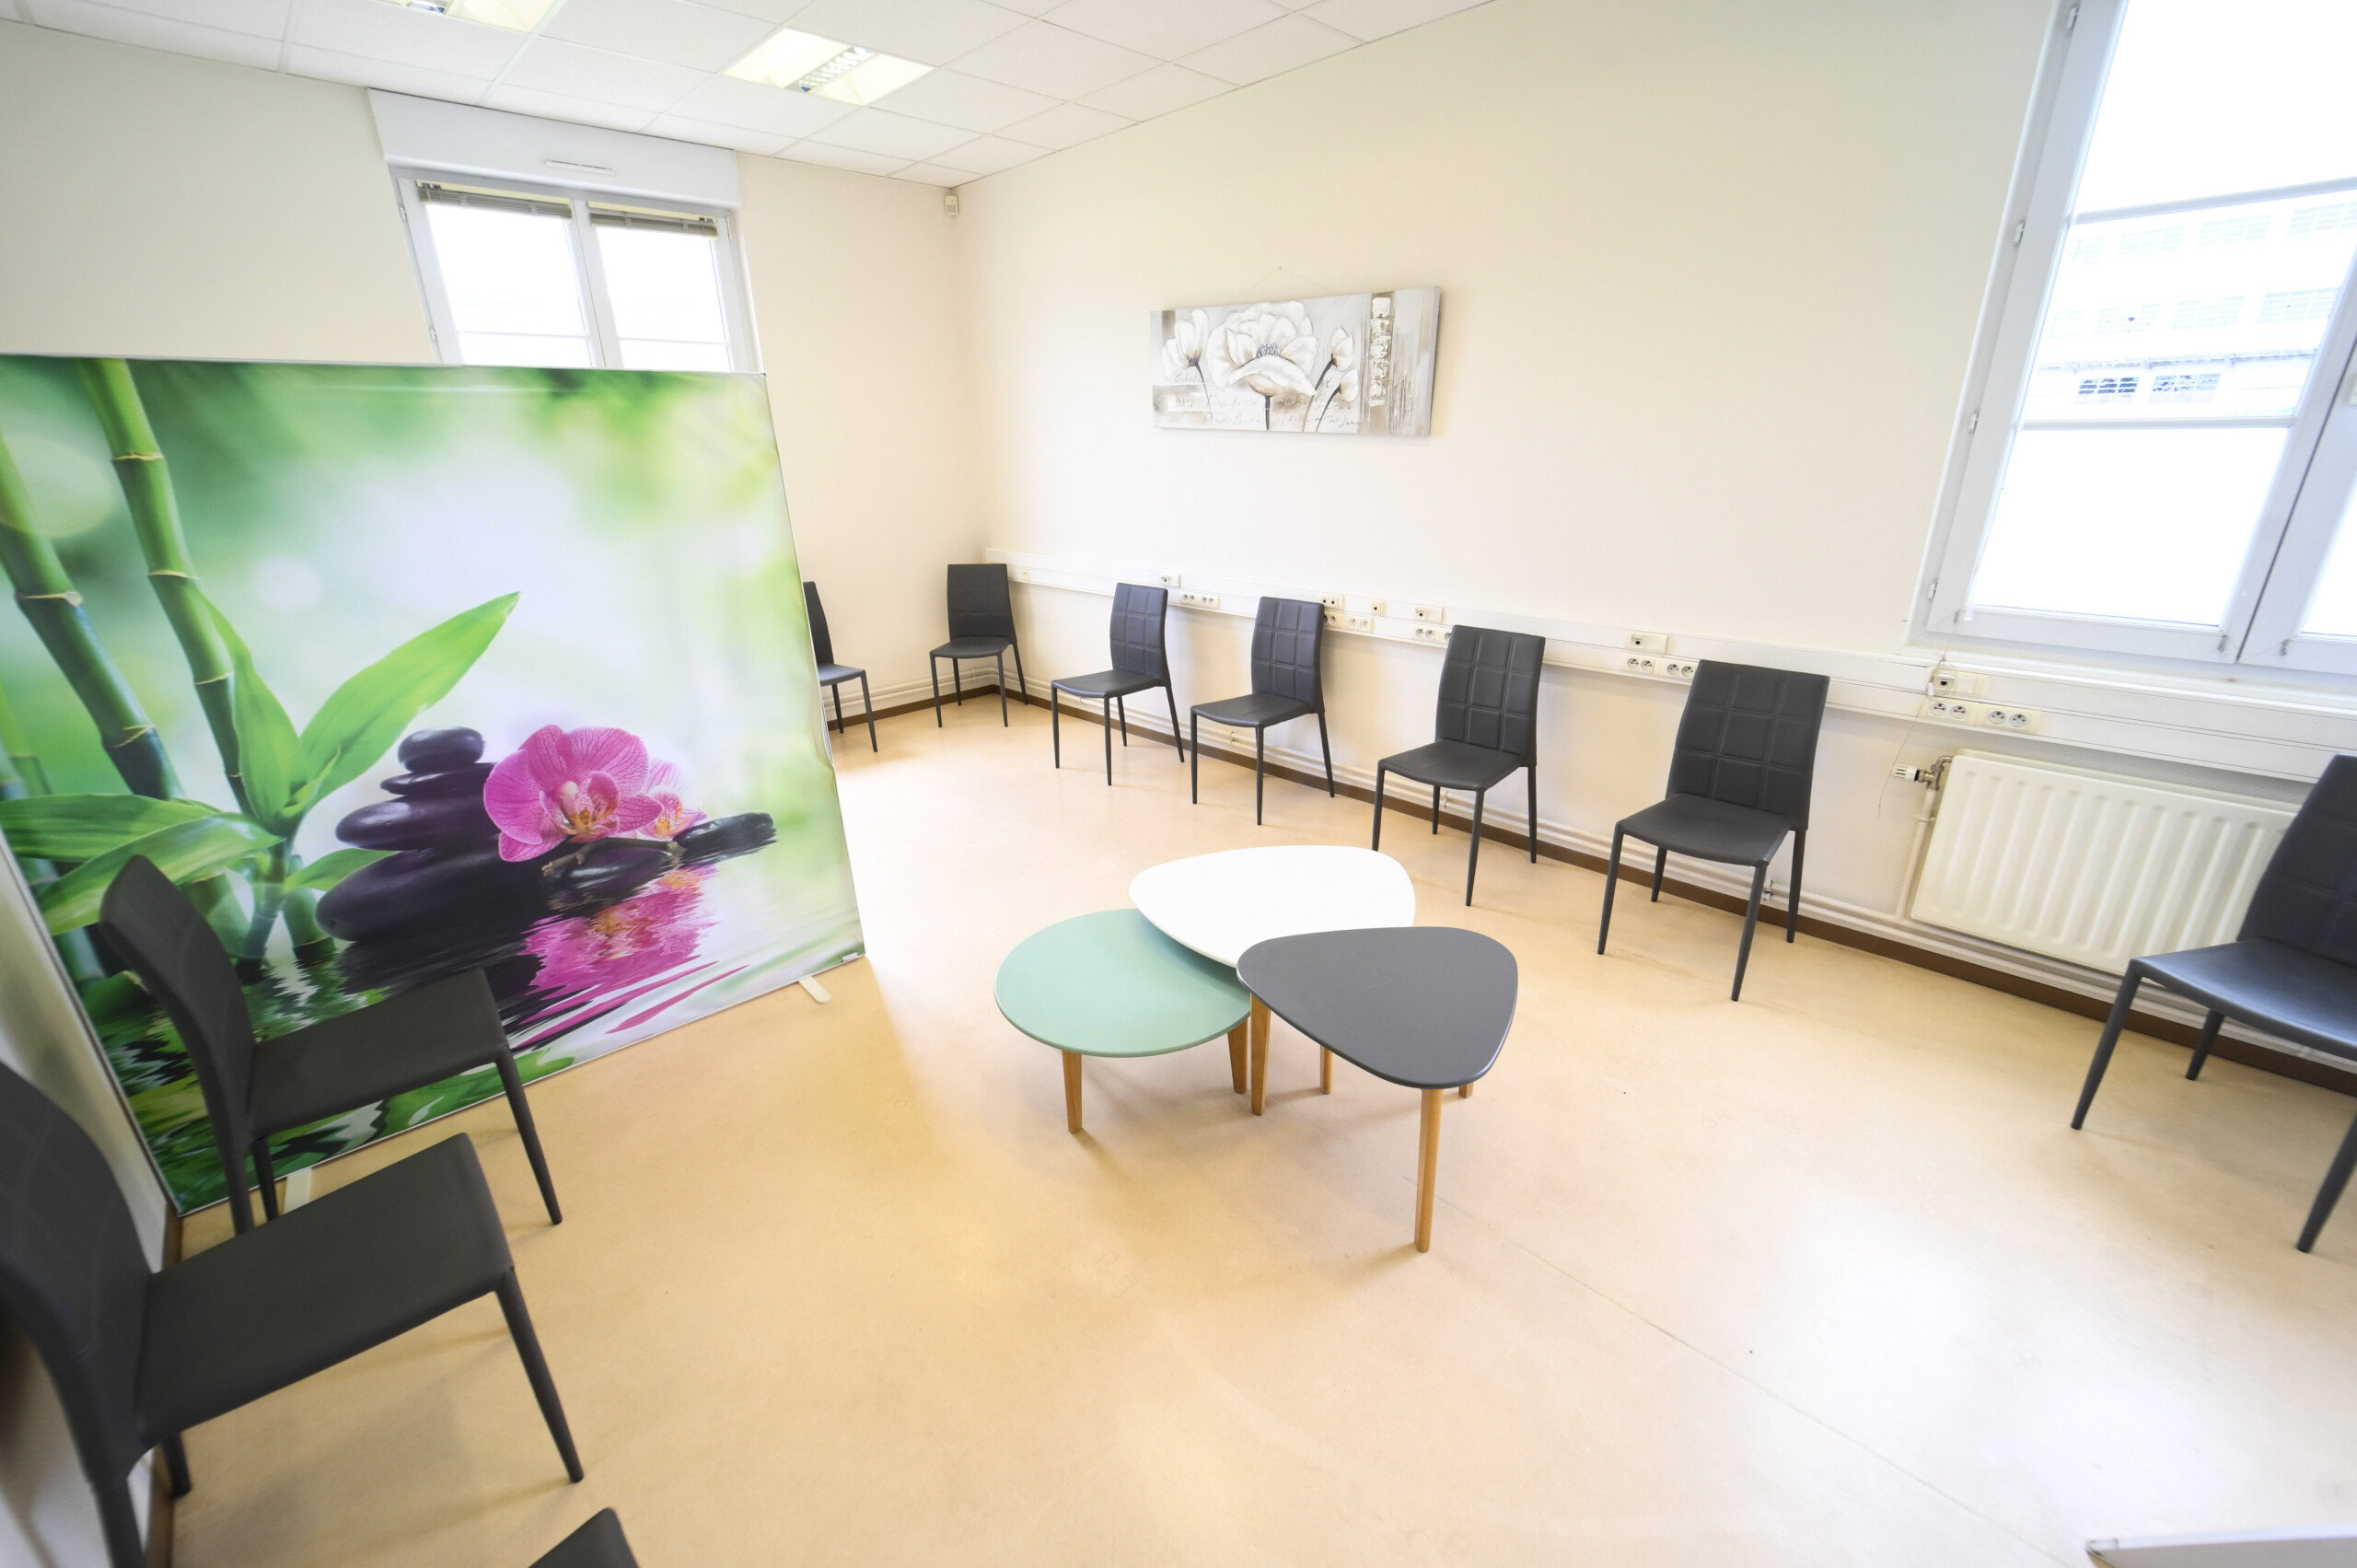 Une salle d'attente moderne avec une décoration murale florale, plusieurs chaises alignées contre le mur et deux tables basses ovales au centre du Laboratoire Givet Bio Ard'Aisne.